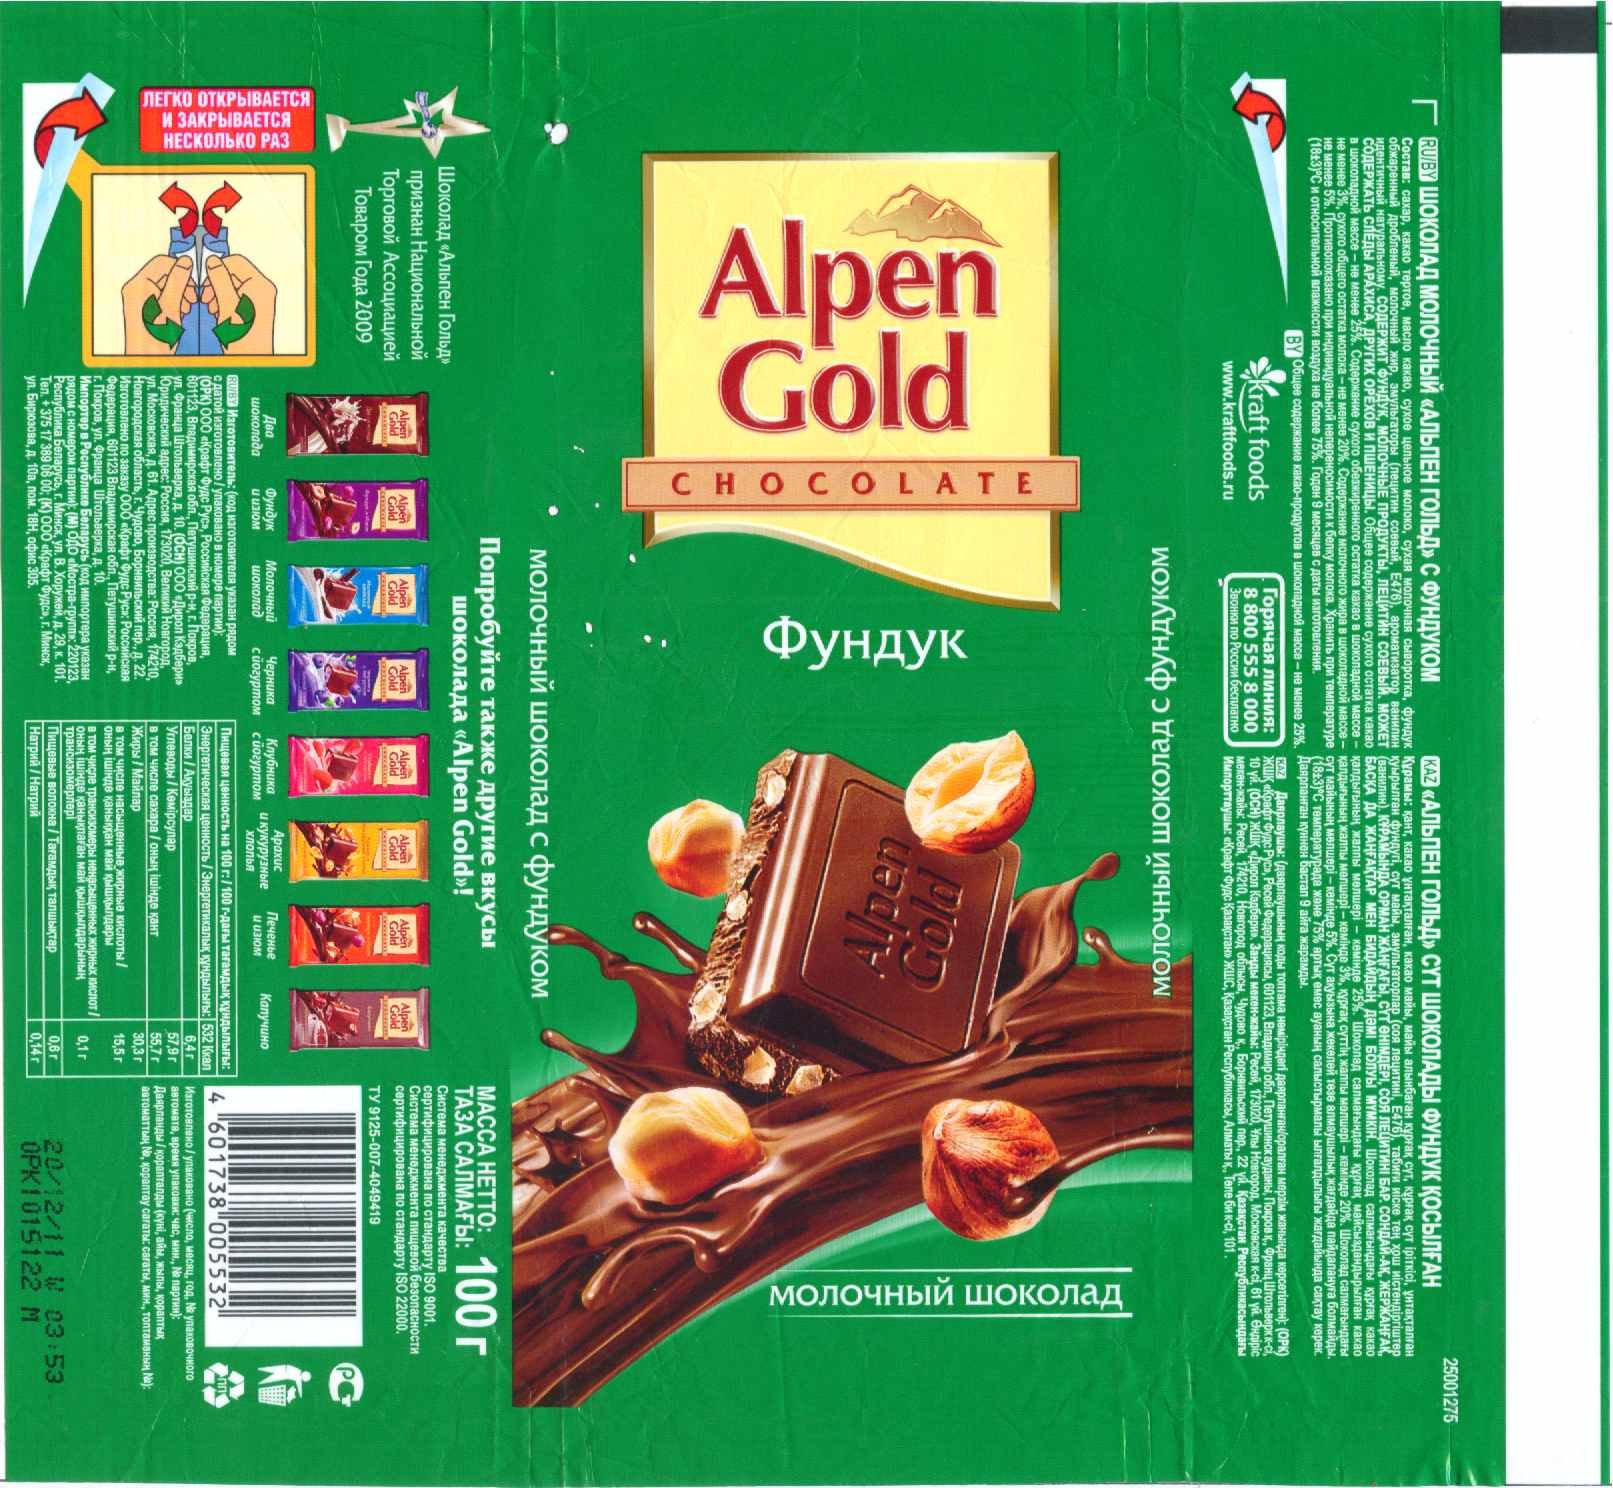 Какой размер у шоколадки. Шоколад Альпен Гольд молочный этикетка 85гр. Альпен Гольд шоколад молочный 85 гр. Альпен Гольд шоколад ассортимент. Шоколад Alpen Gold 85гр. Молочный.